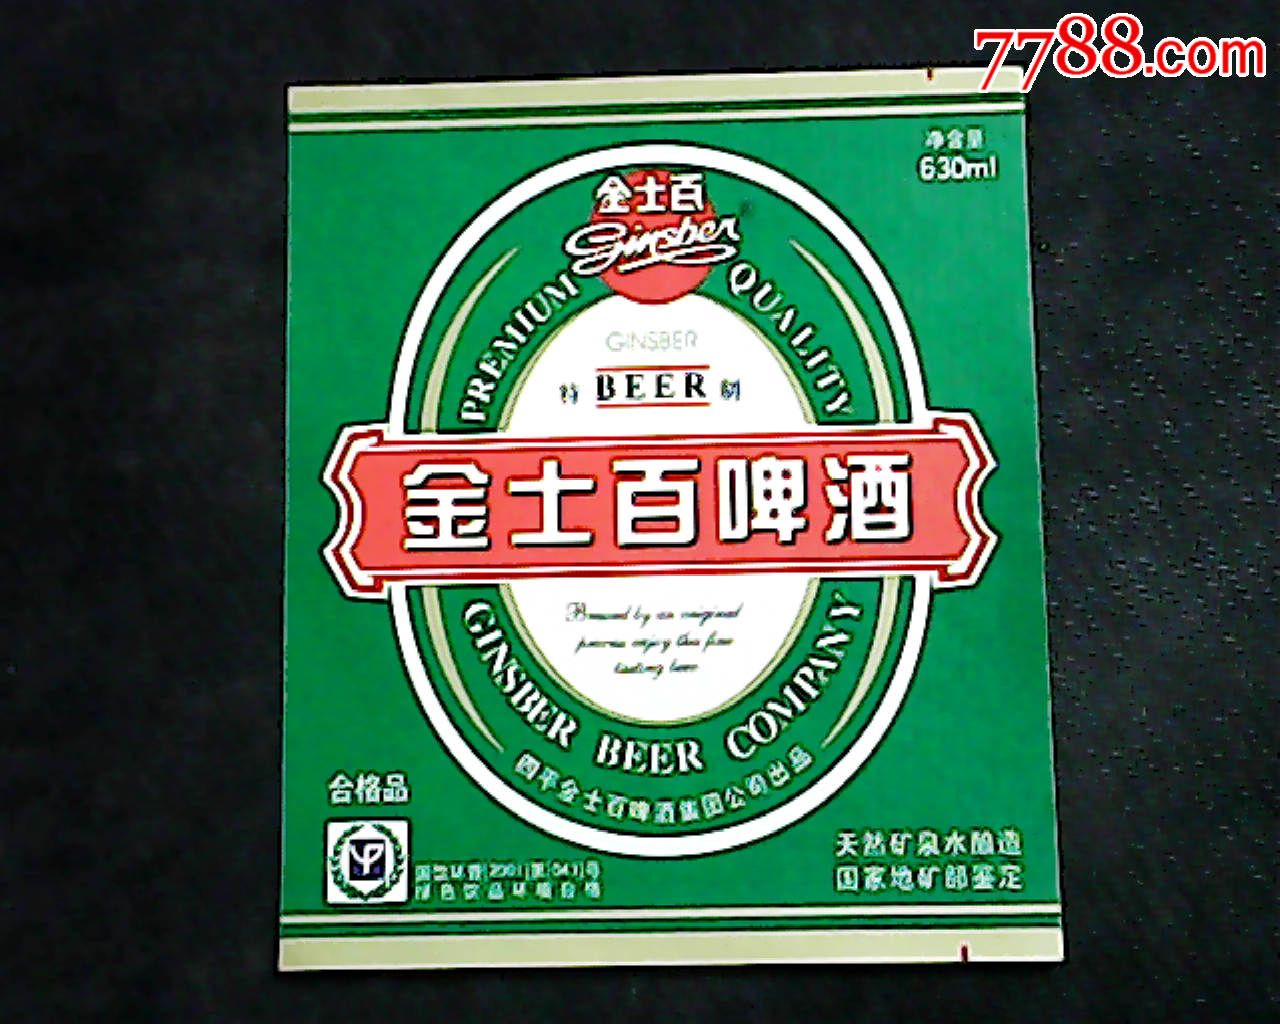 金士百1985啤酒图片图片